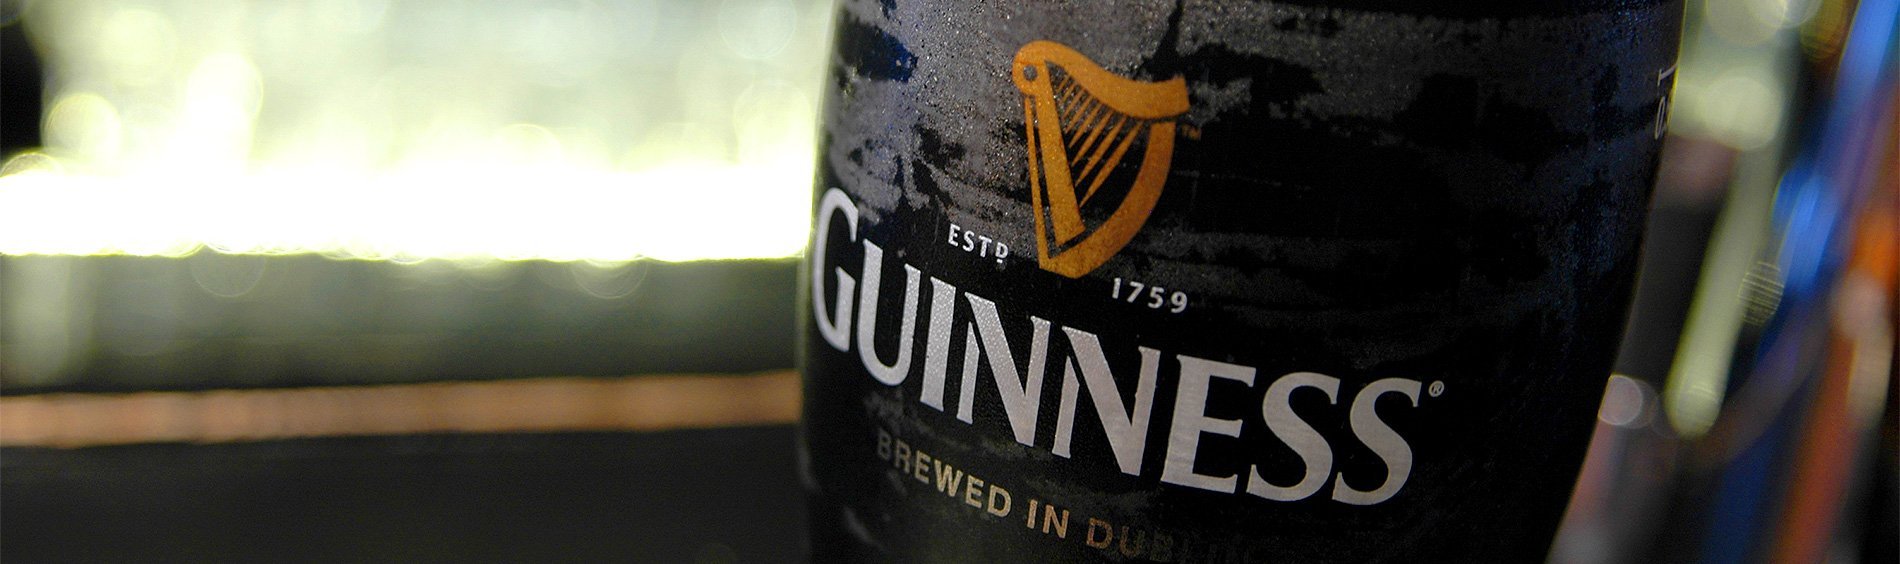 Najbardziej znany stout na świecie - poznaj historię piwa Guinness